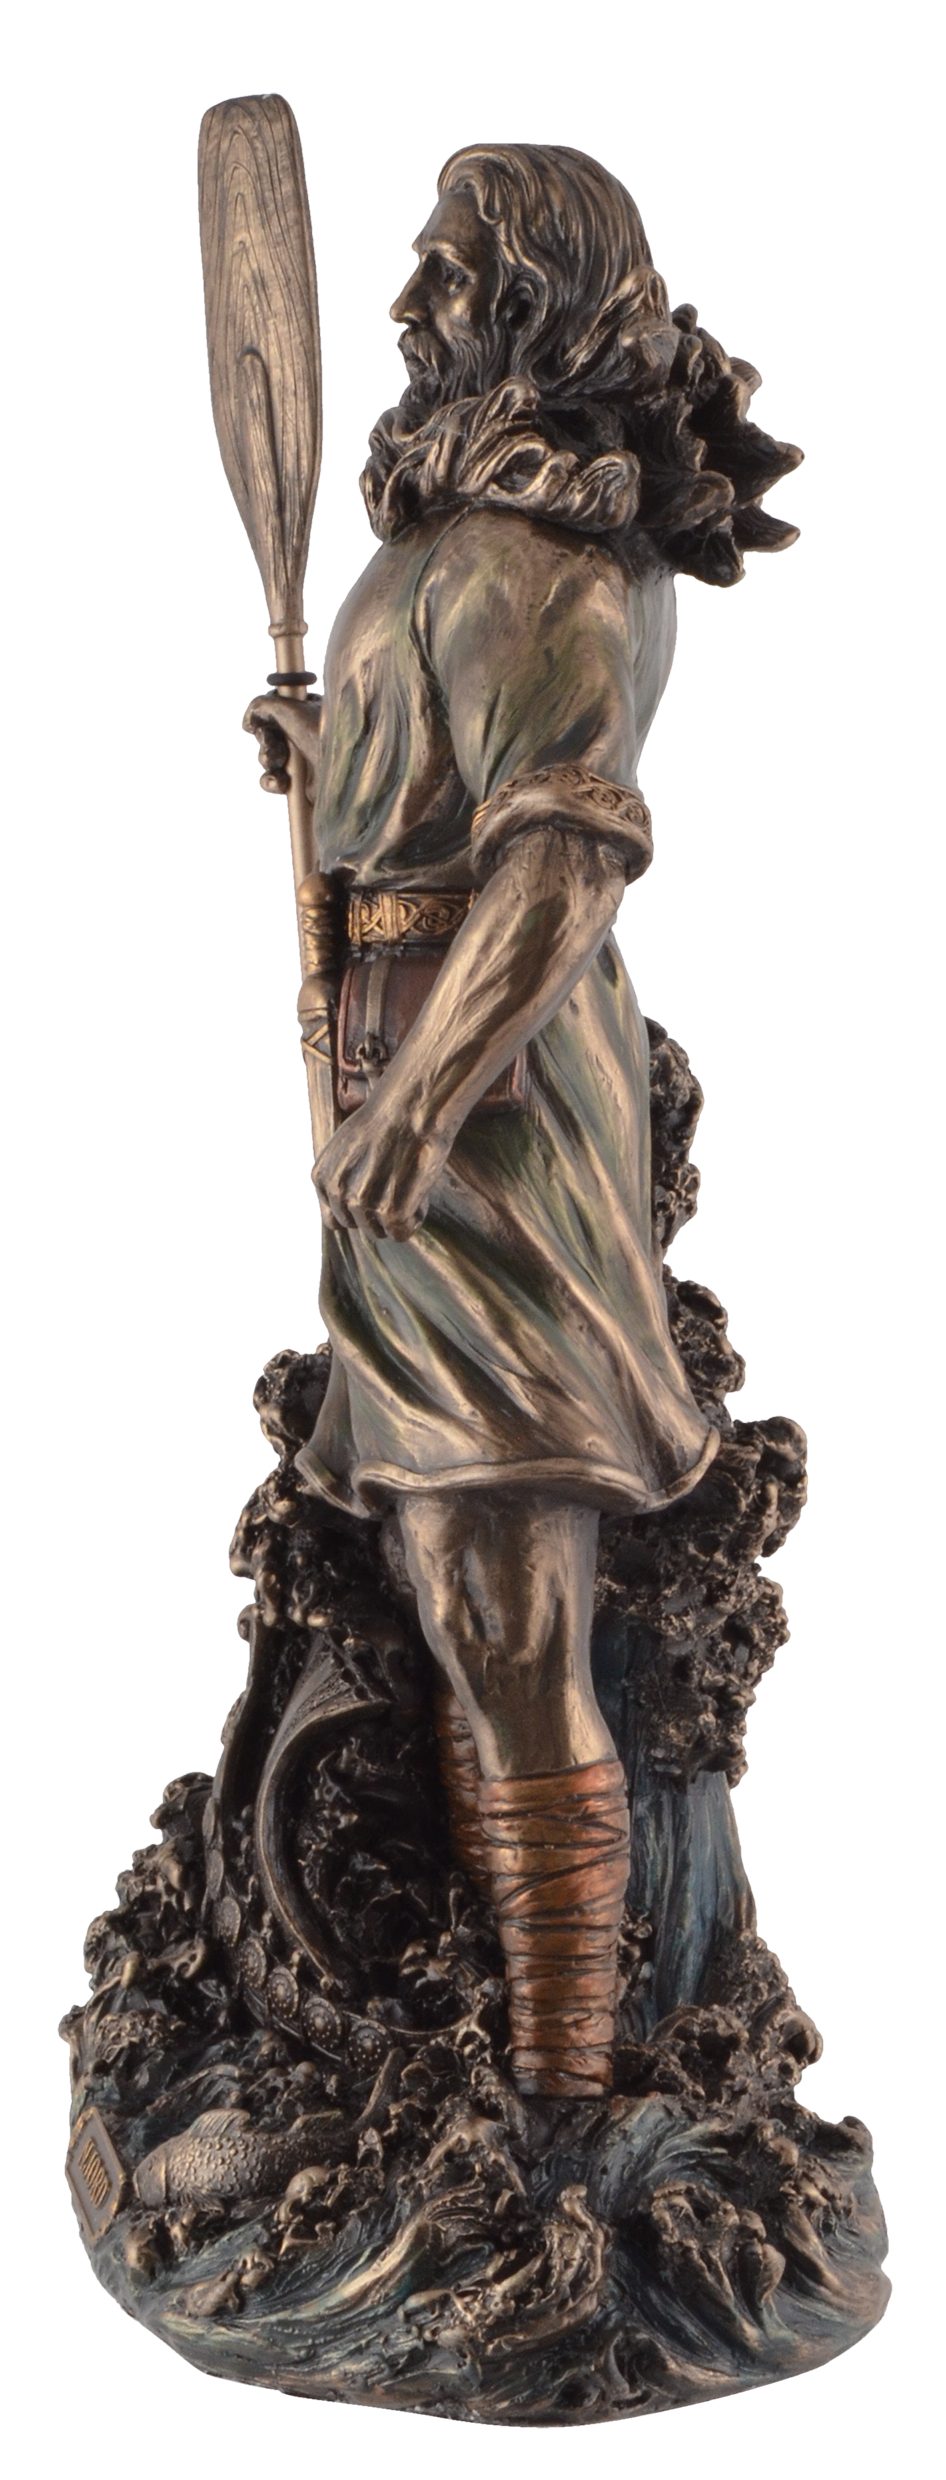 Gmbh des Windes Veronese, Njörd Vogler Meere - germanischer by Hand der Gott bronziert, Dekofigur ca. 15x10x27cm LxBxH: direct von und